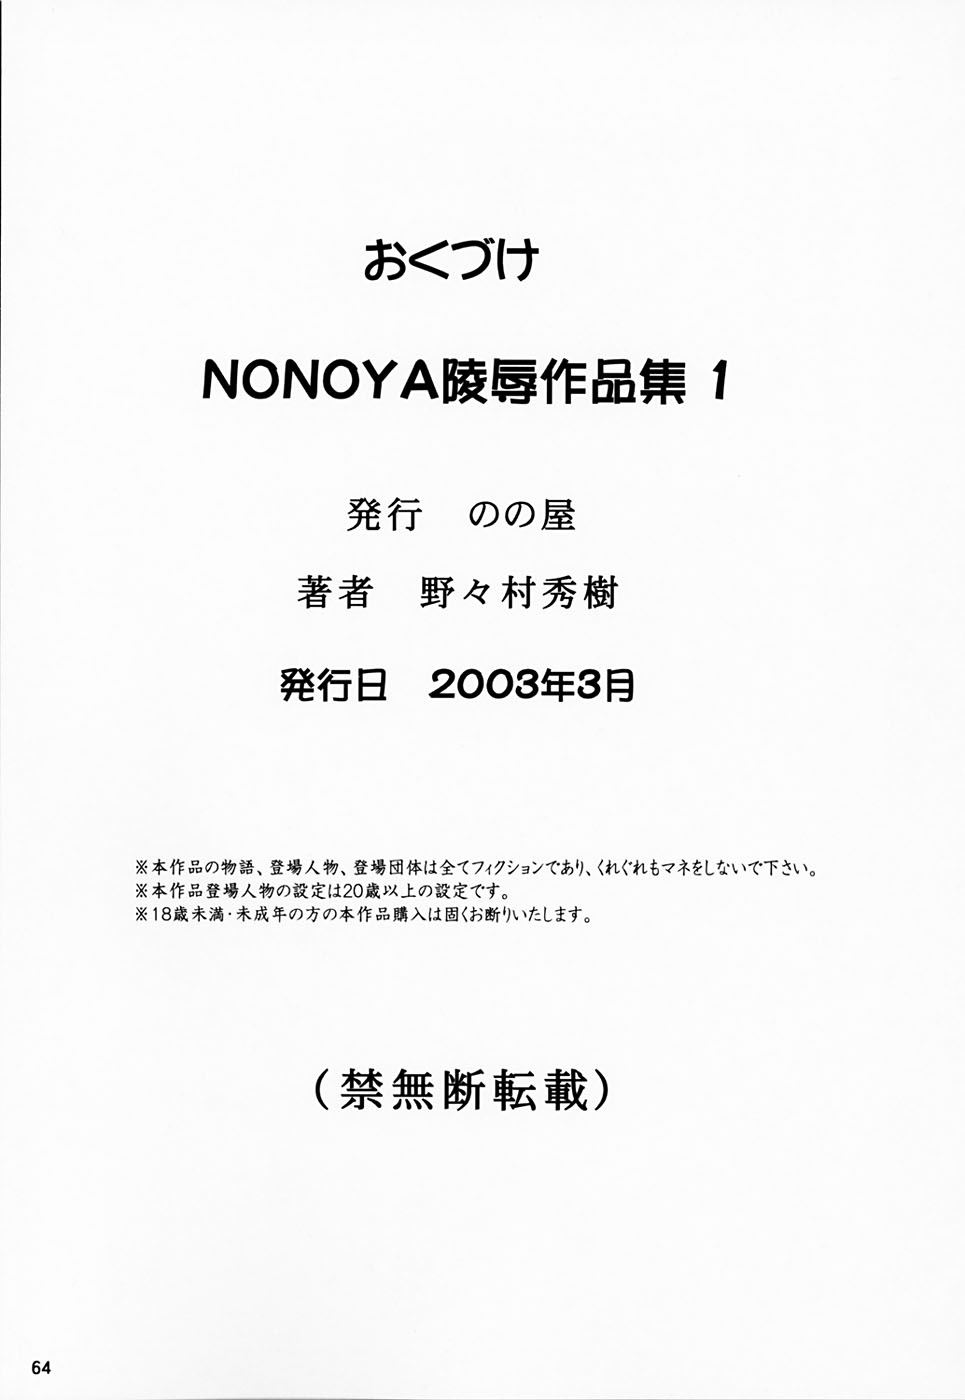 [HIDEKI NONOMURA] Nonoya R1 